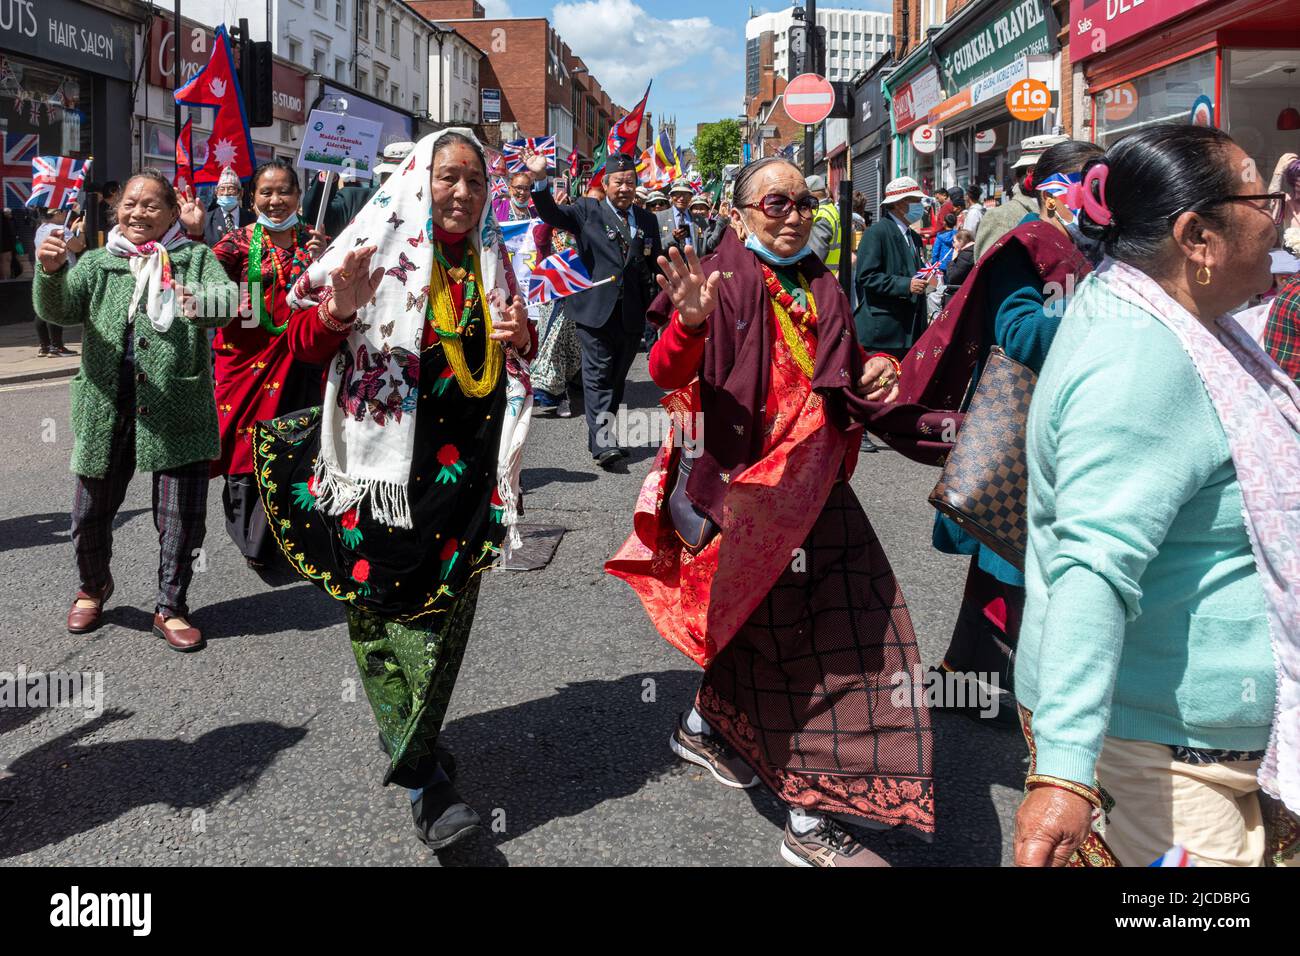 Peuple népalais, népalais aide Maddhat Shamua organisation dans le Grand Parade à Victoria Day, un événement annuel à Aldershot, Hampshire, Angleterre, Royaume-Uni Banque D'Images